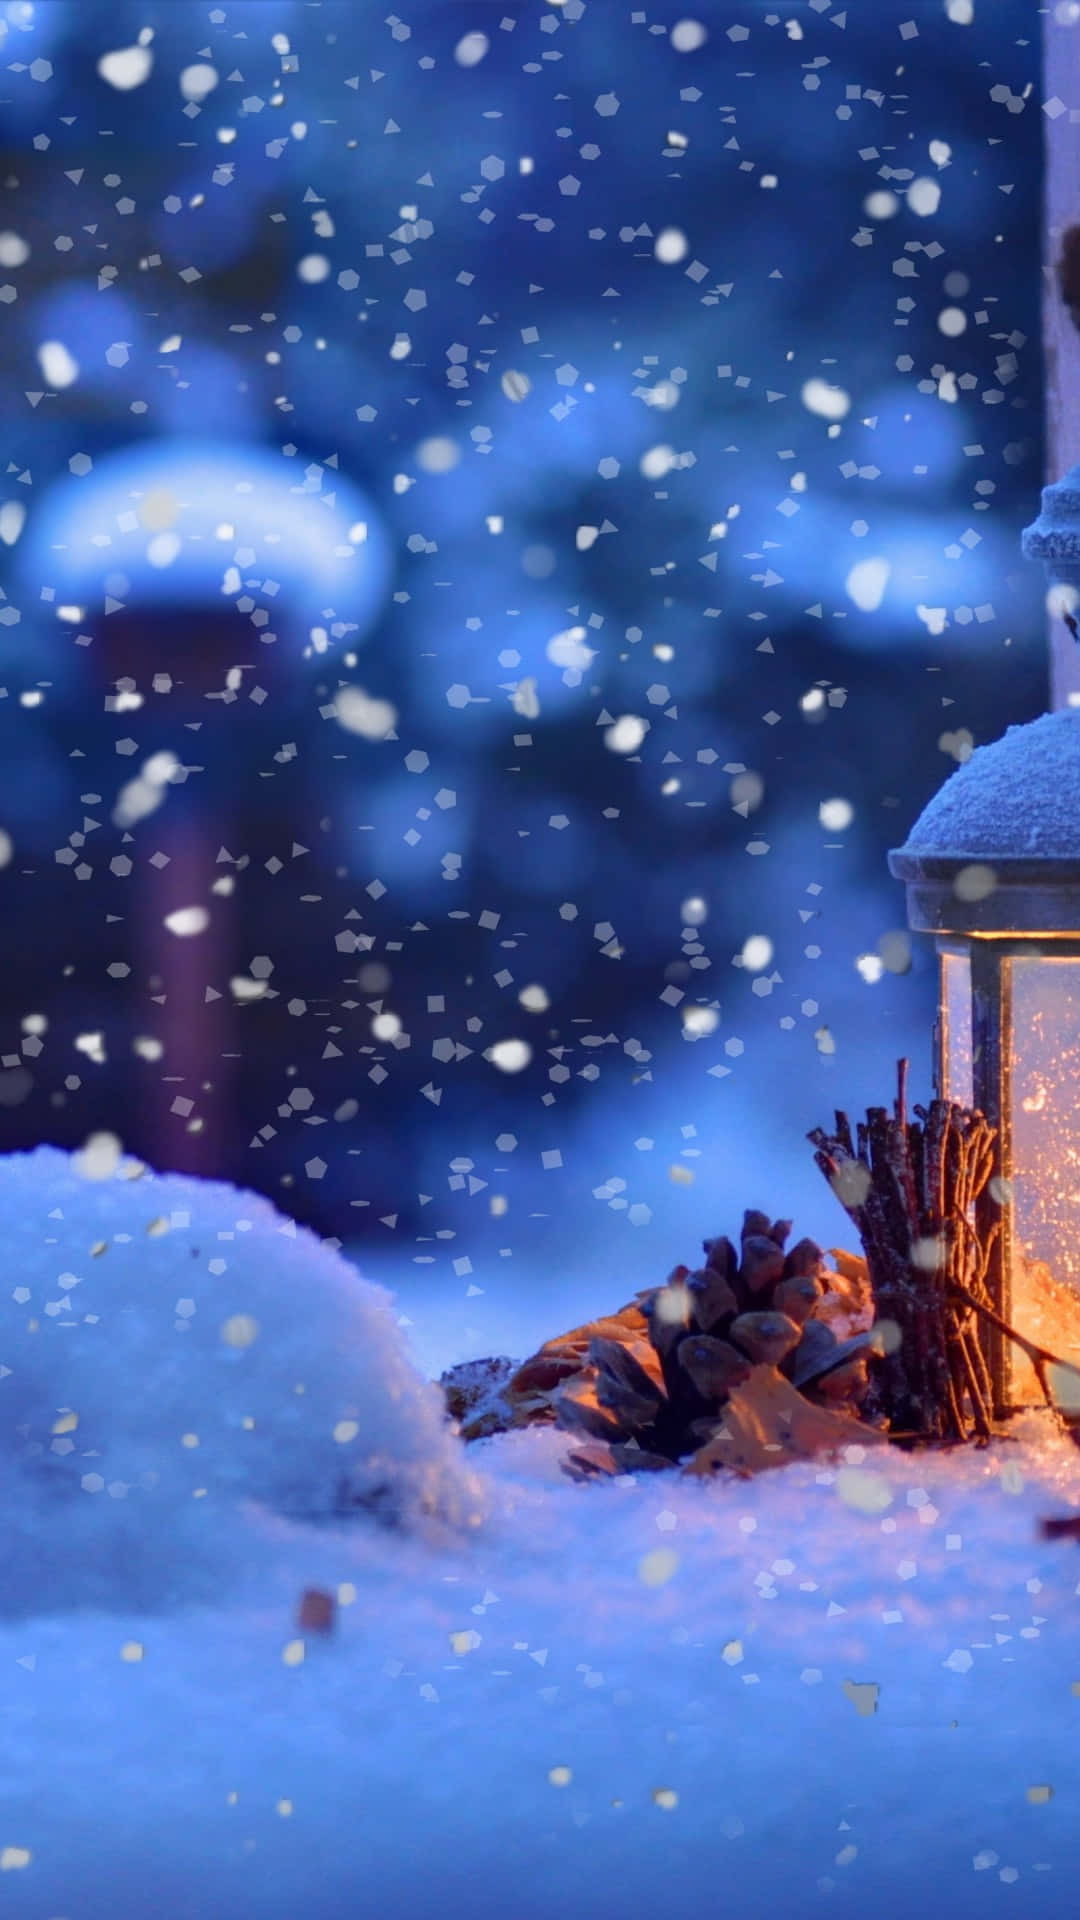 flakesFejr sæsonen med en vinter wonderland af jule snefnug. Wallpaper